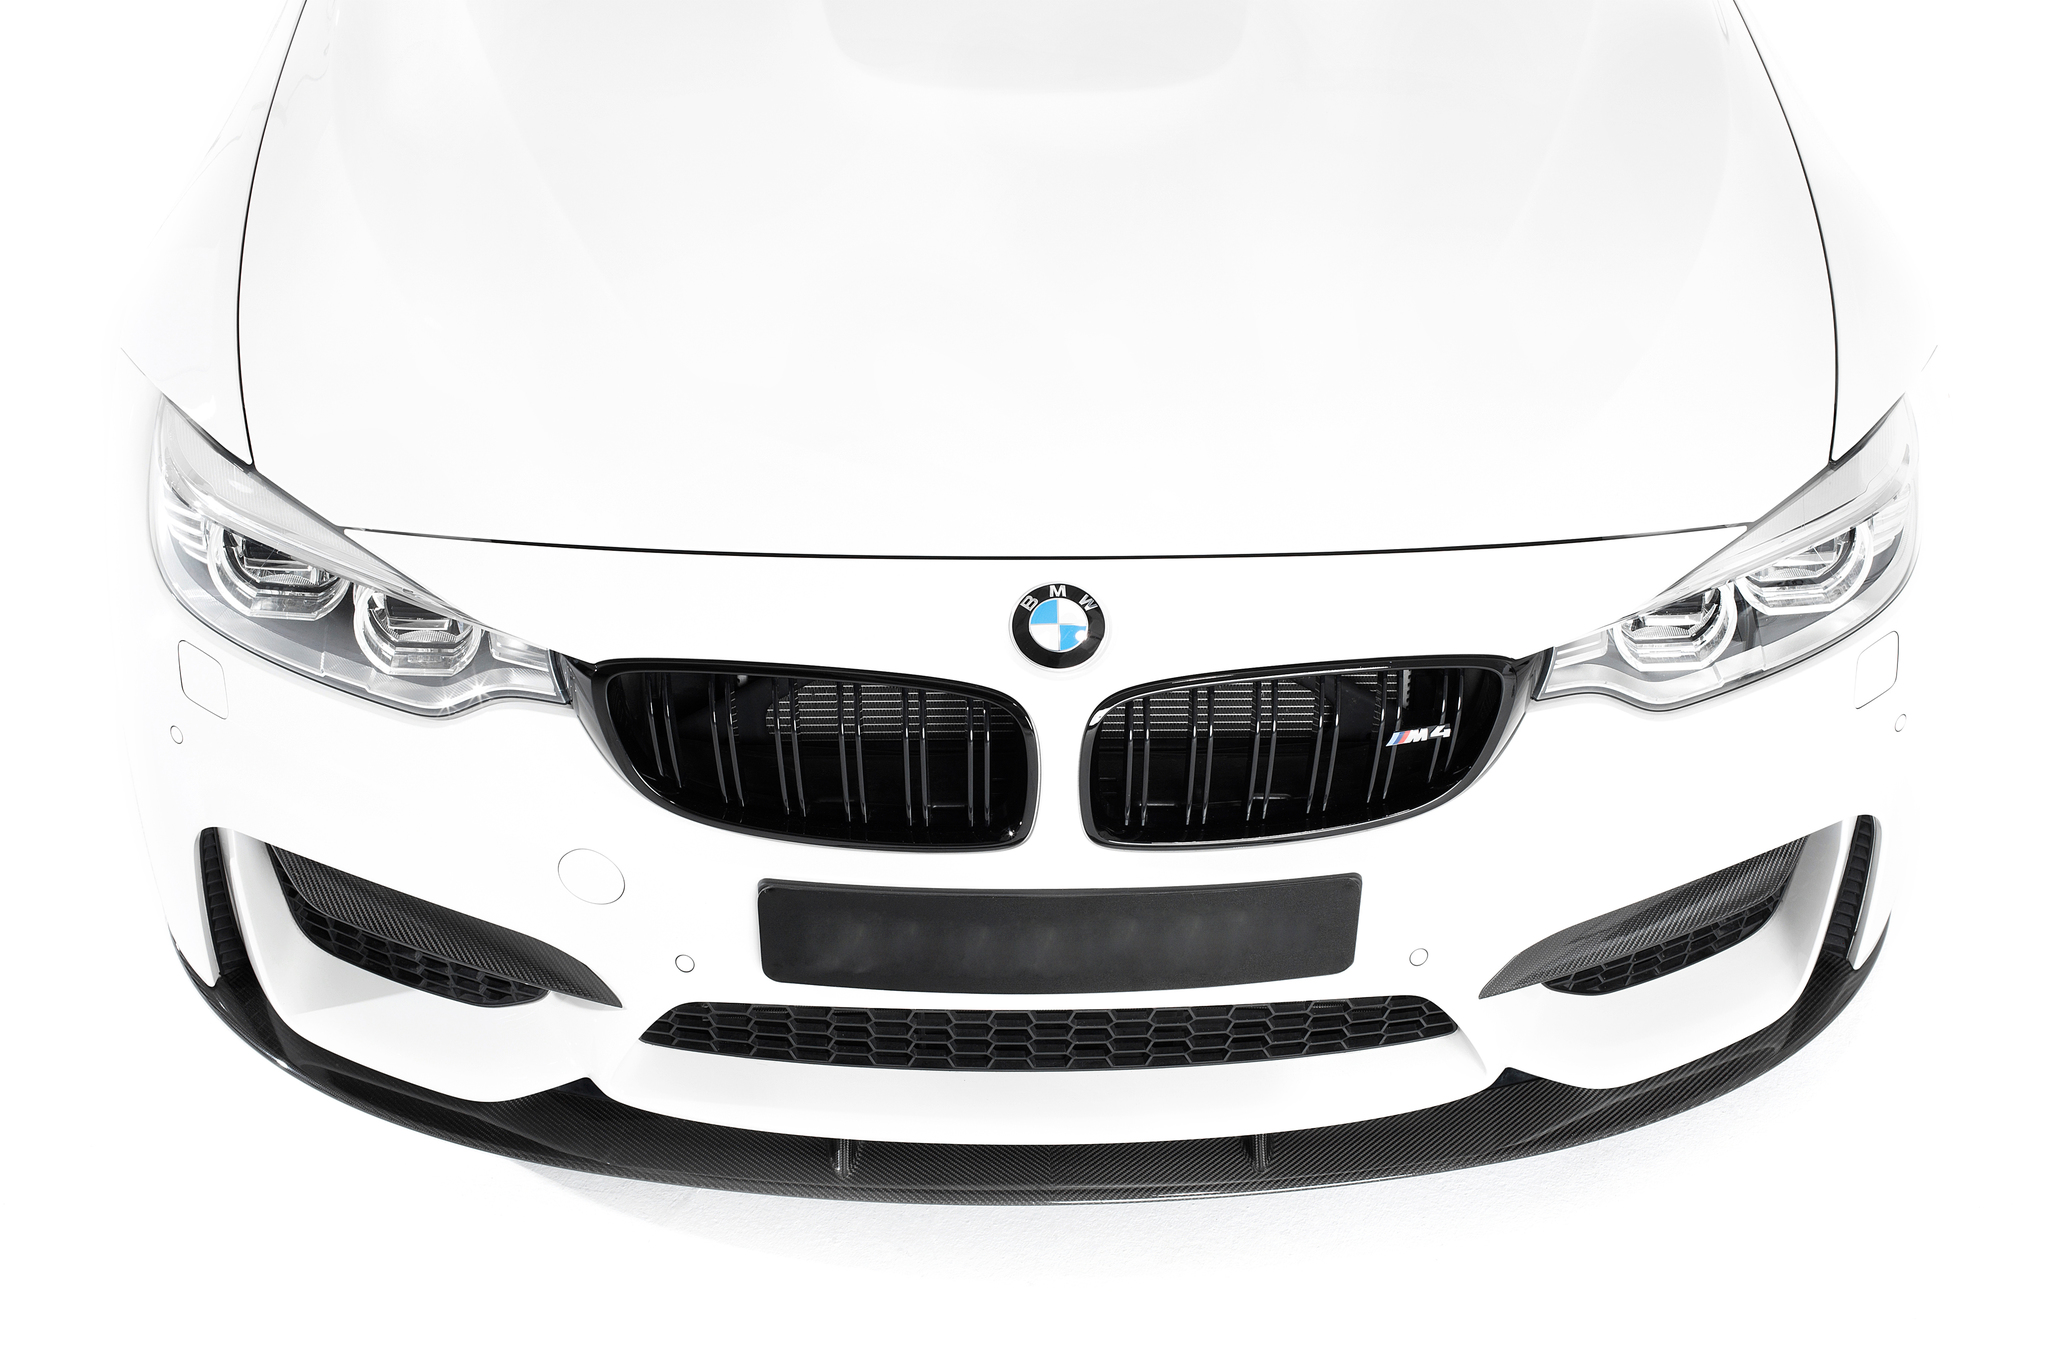 Sterckenn Carbon Fiber front splitter for BMW M3 F80 new model